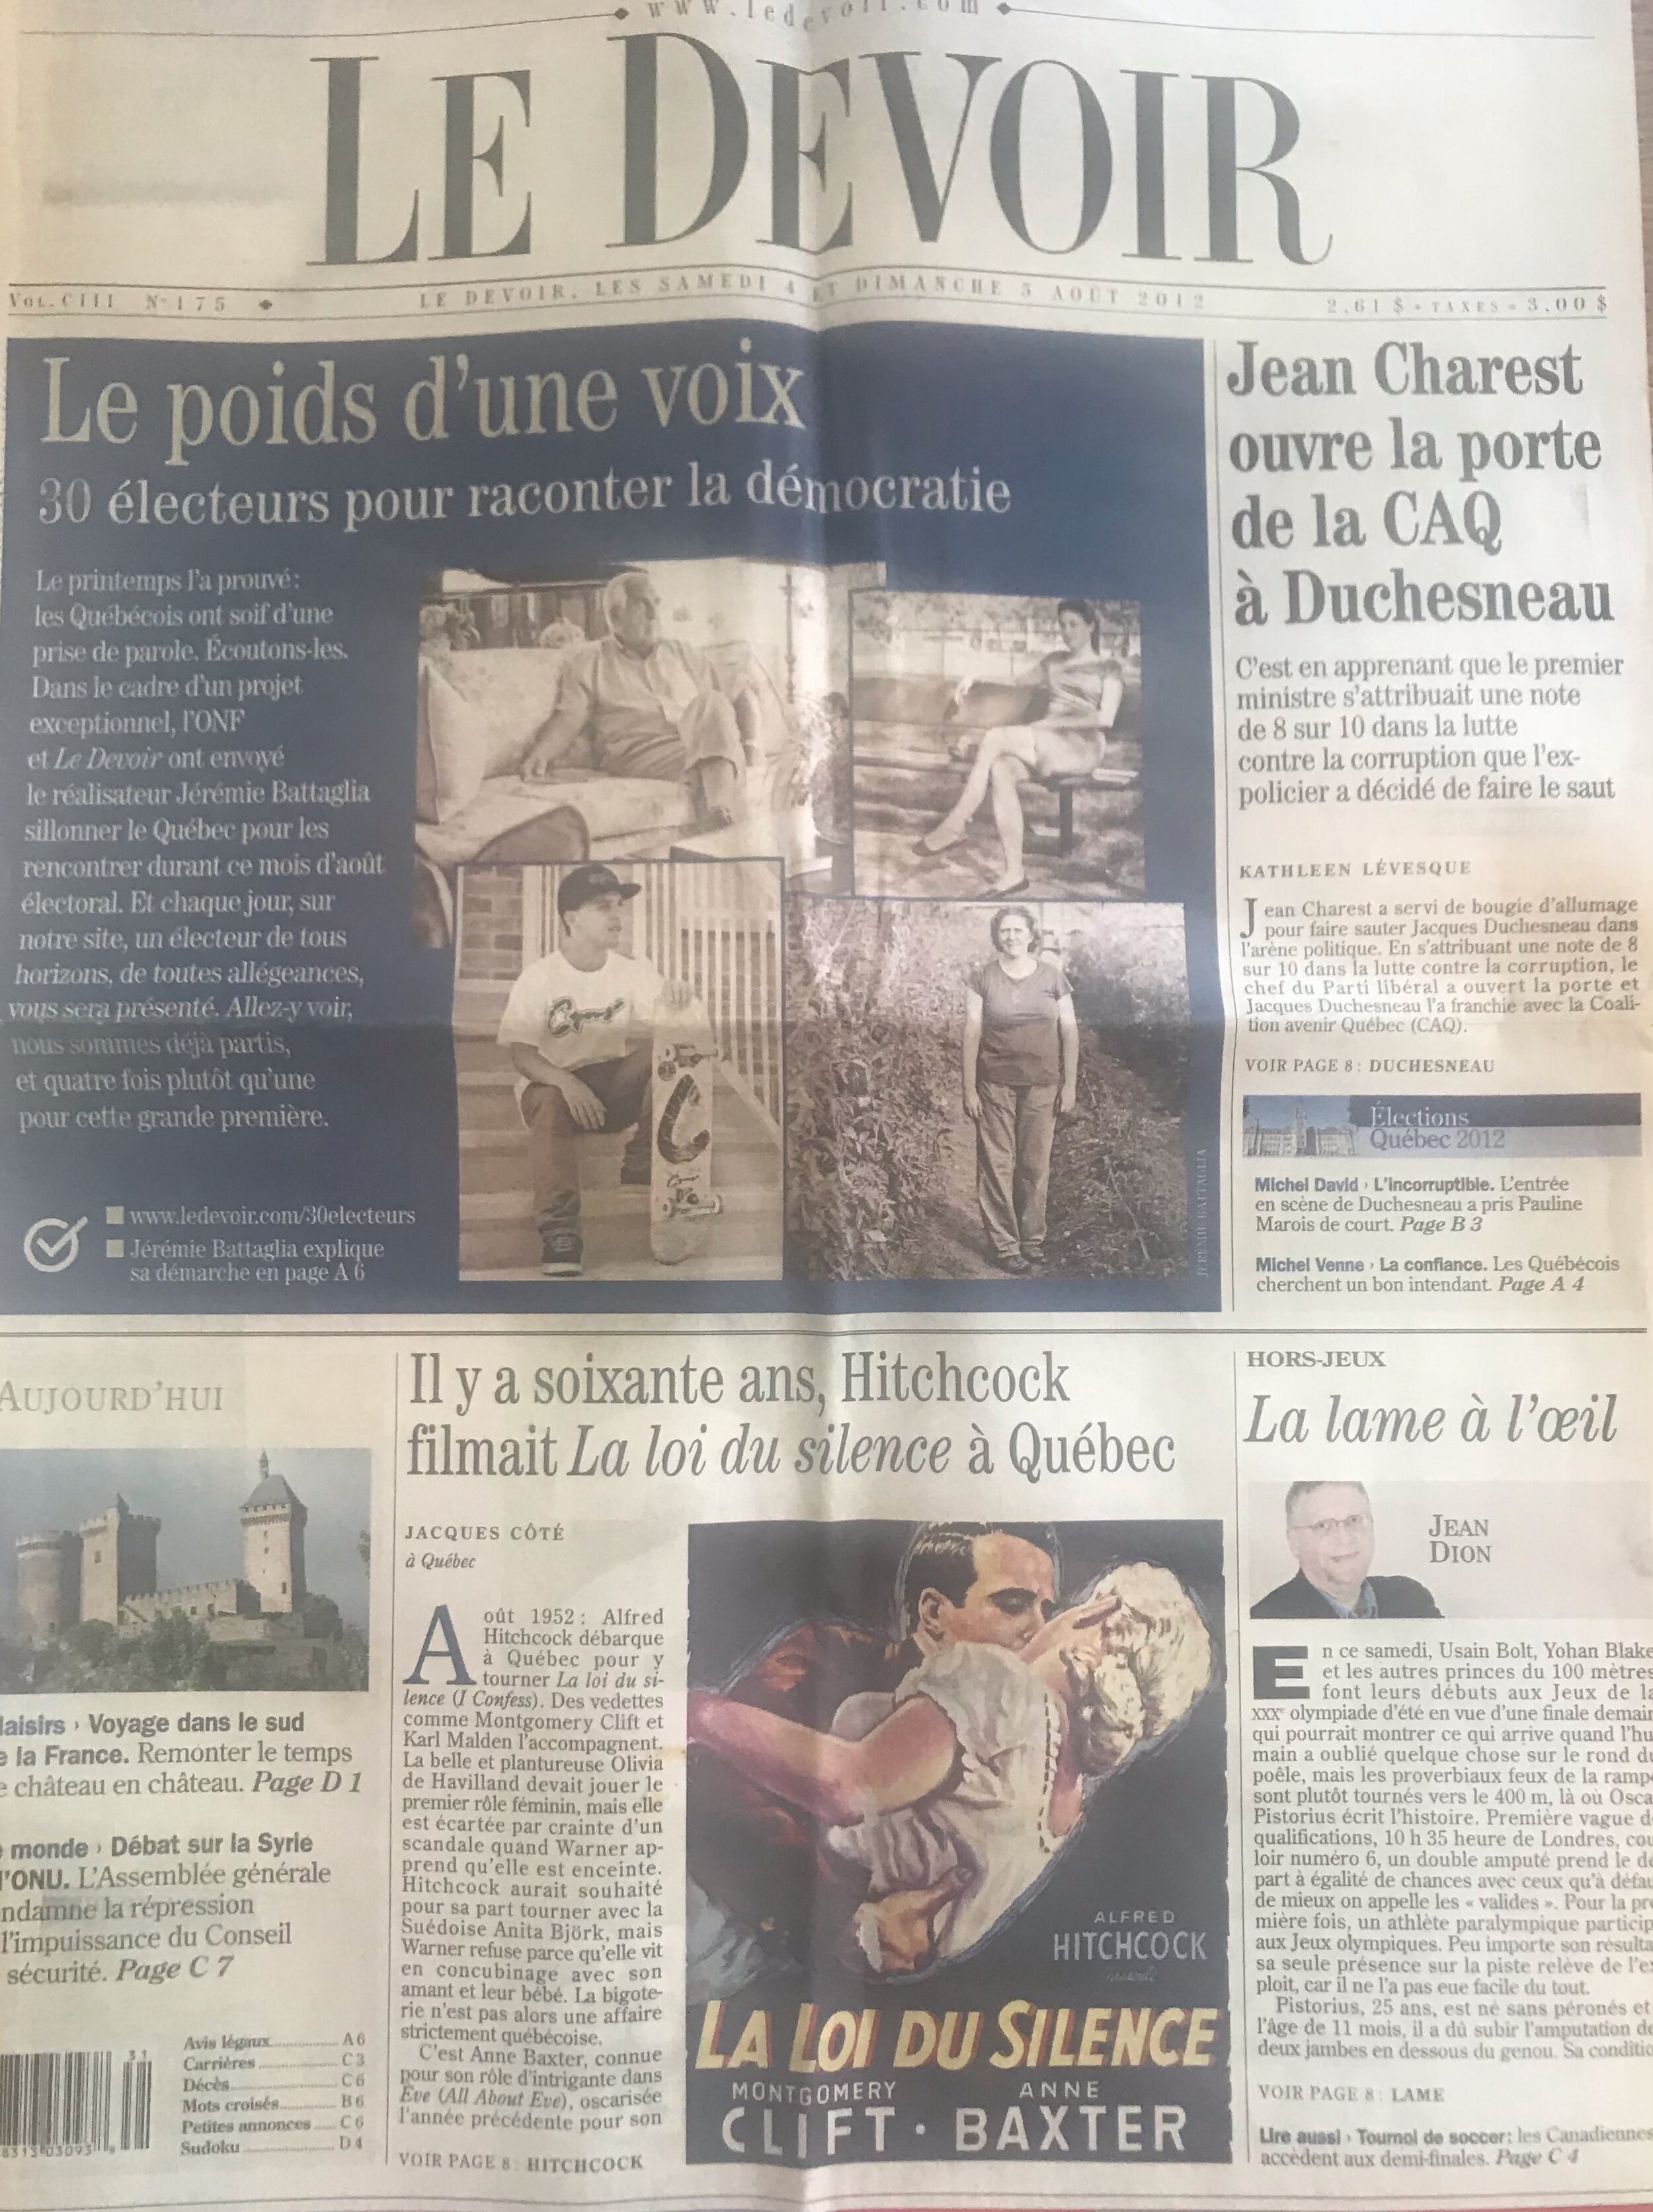   Une du journal Le Devoir des 4 et 5 août 2012 : il y a 60 ans, Hitchcock tournait “La loi du silence à Québec”.  